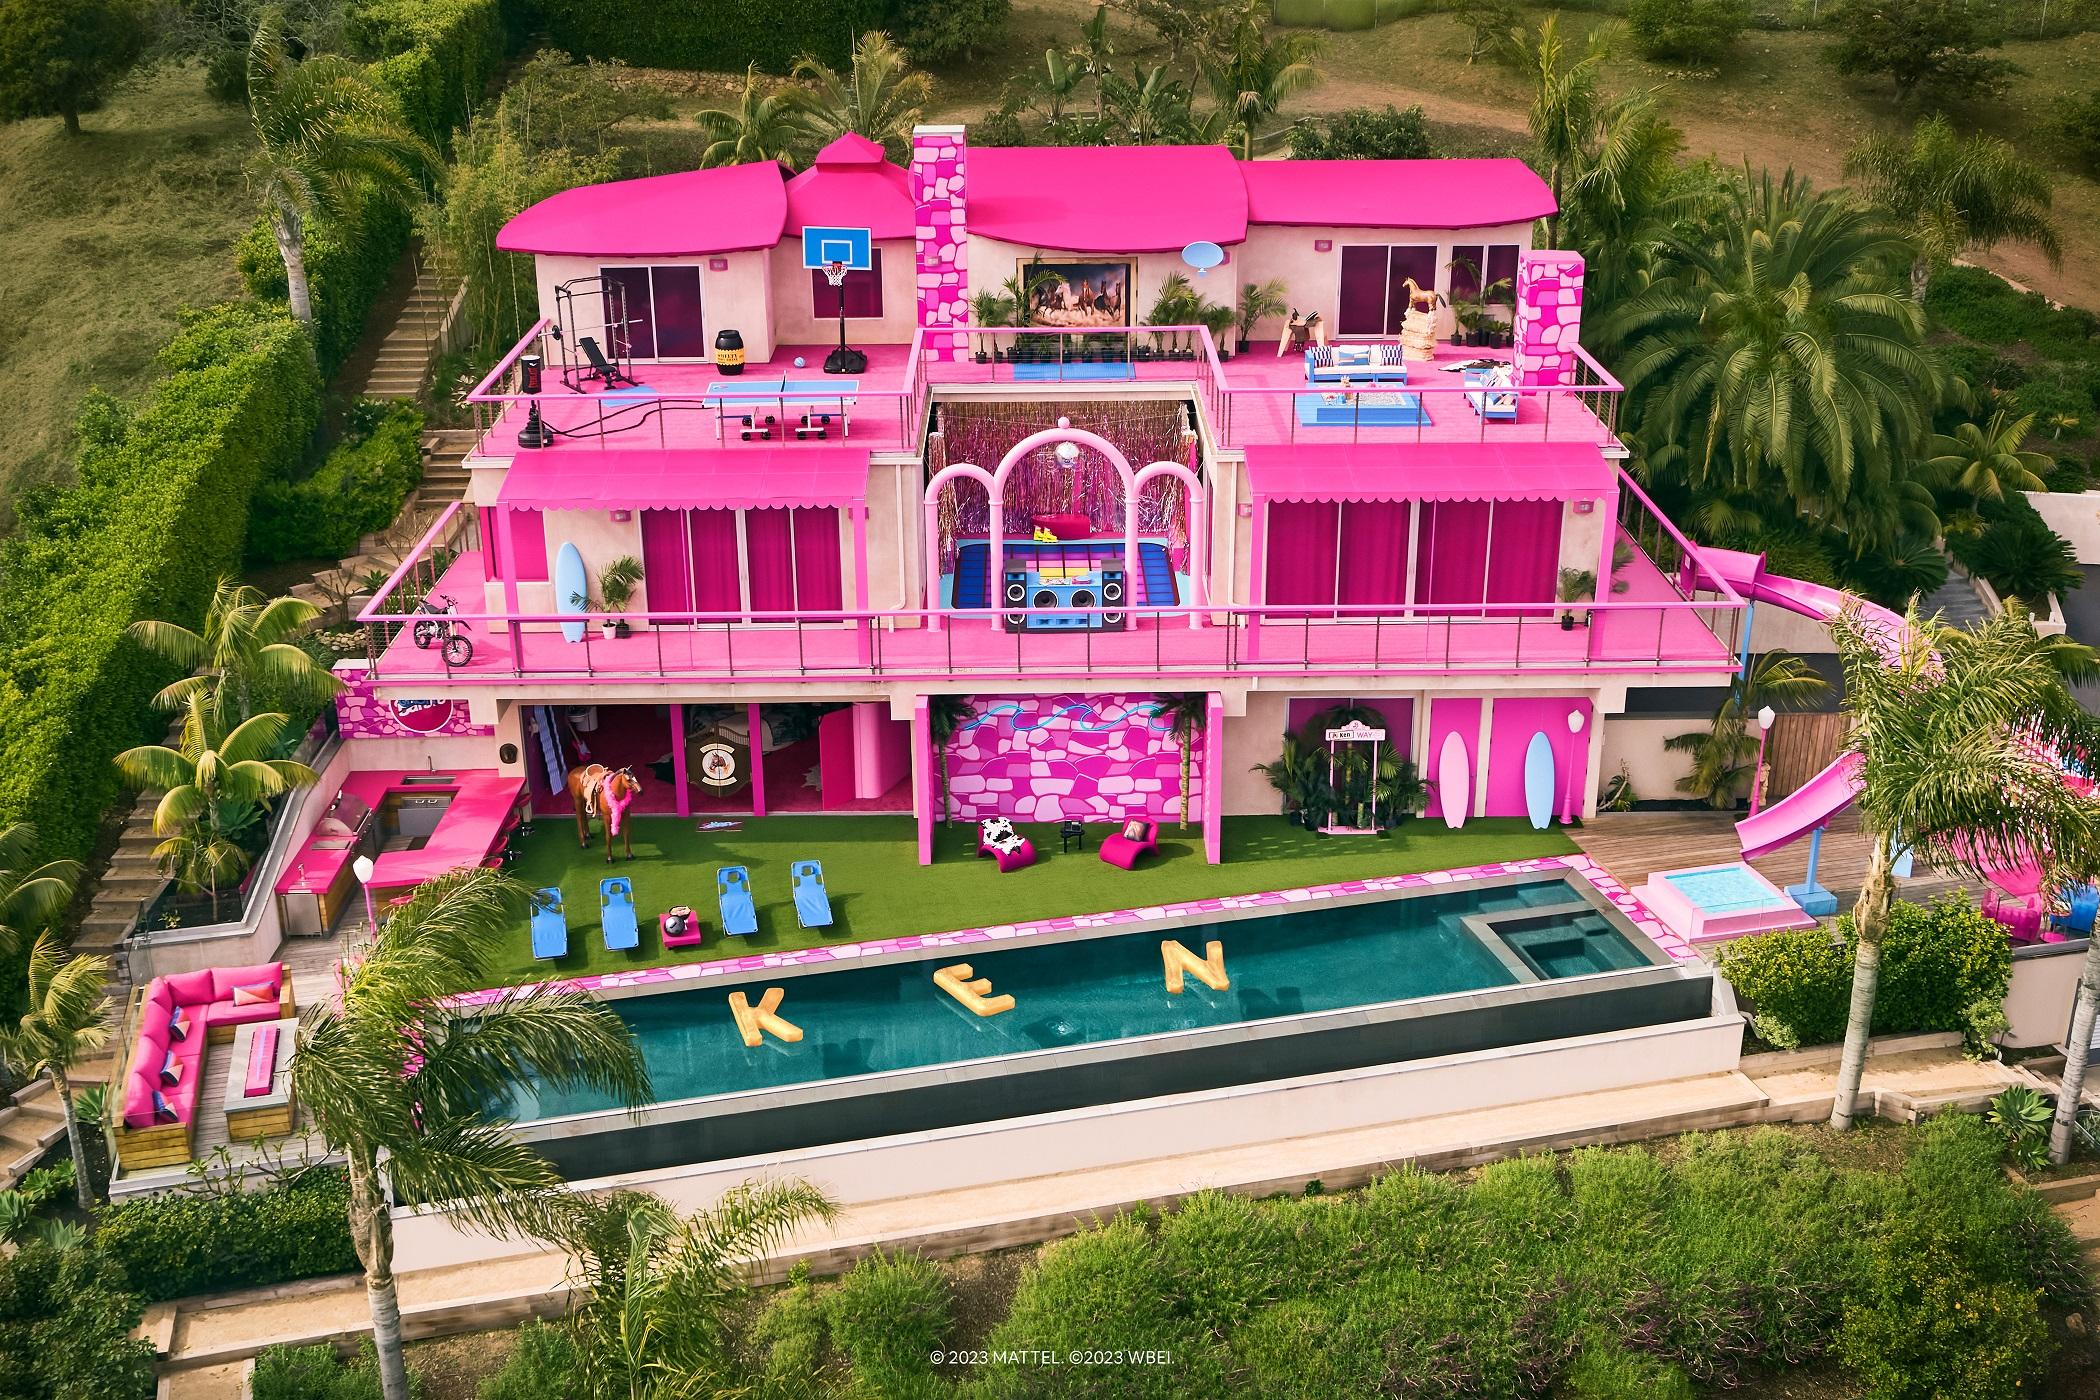 À l'occasion de la sortie du film "Barbie" de Greta Gerwig, Airbnb a mis en location la maison de rêve de la célèbre poupée Mattel à Malibu. [Mattel - WBEI - Hogwash Studios]